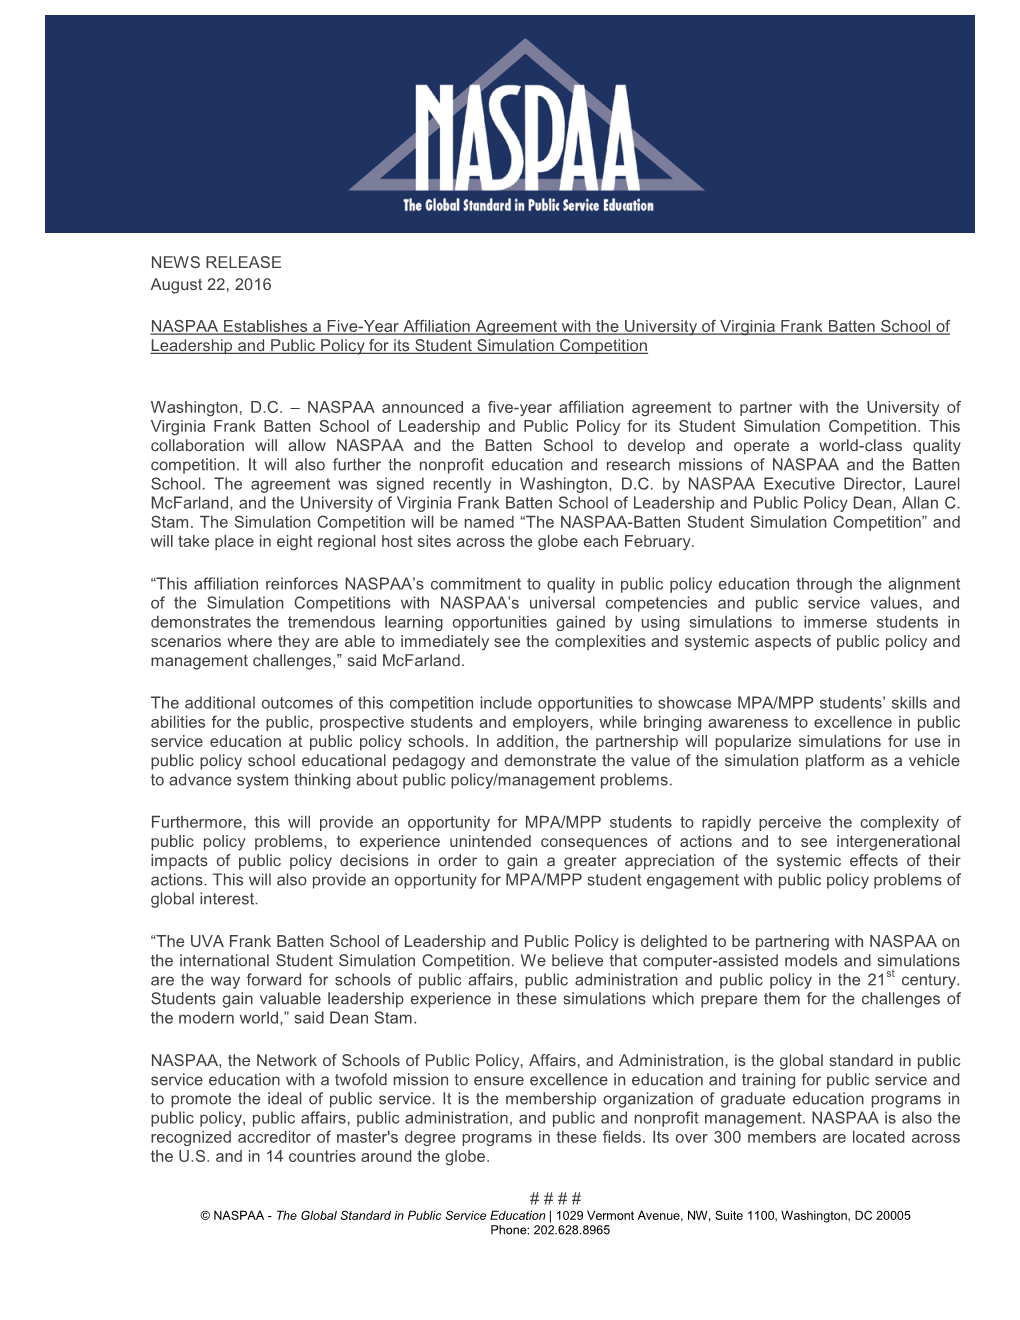 NASPAA-Batten Partnership Announcement, 8-22-16